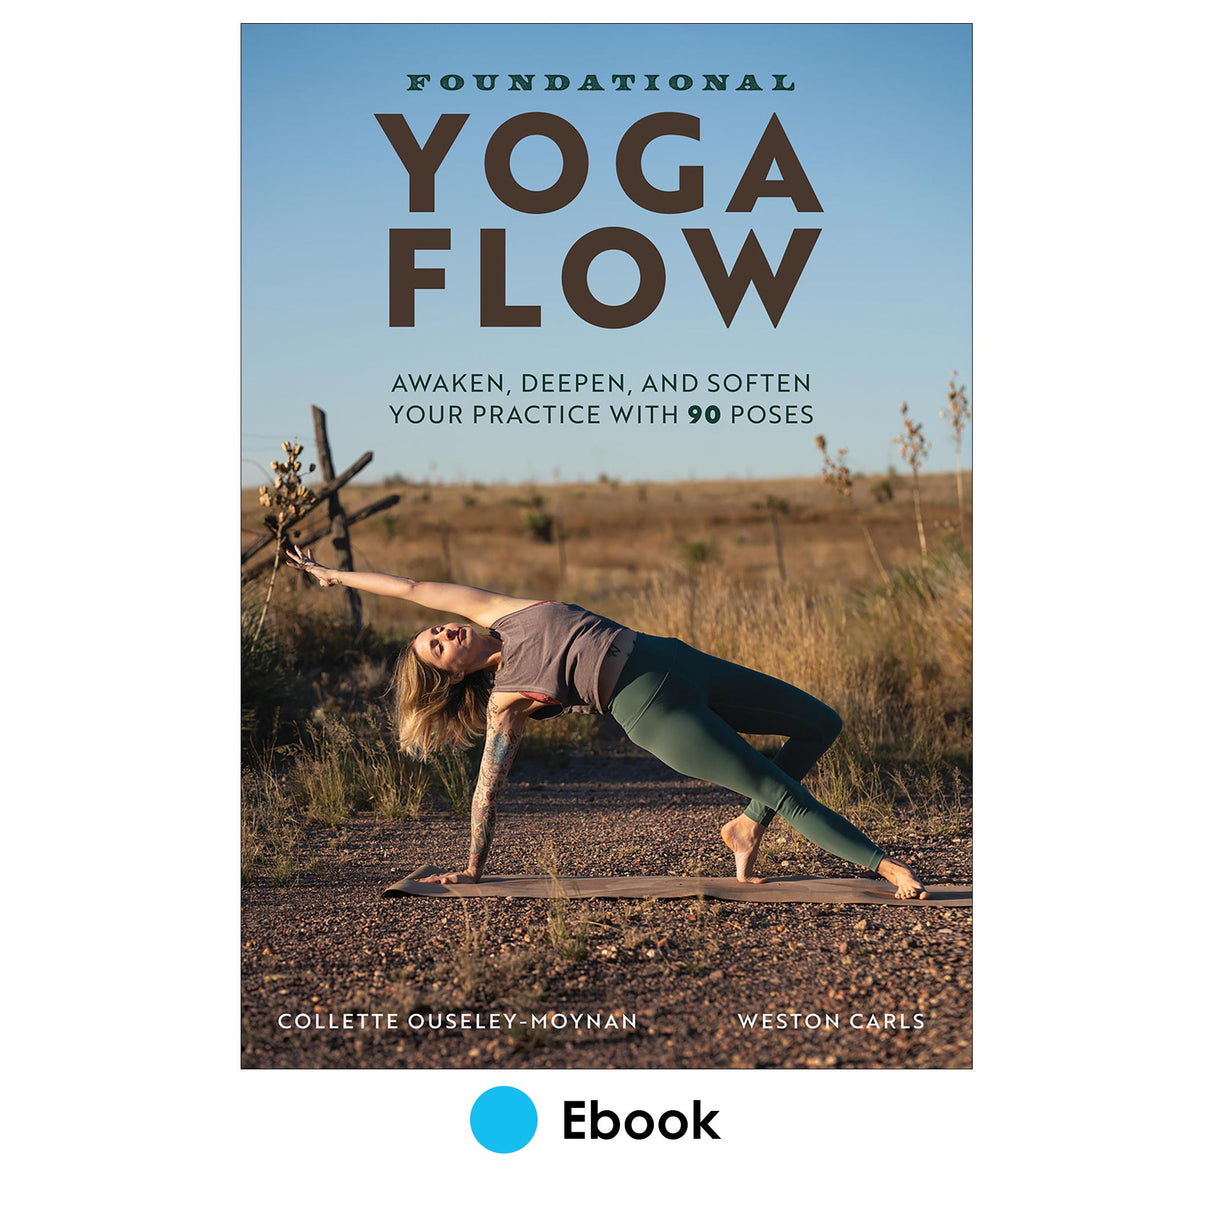 Foundational Yoga Flow epub